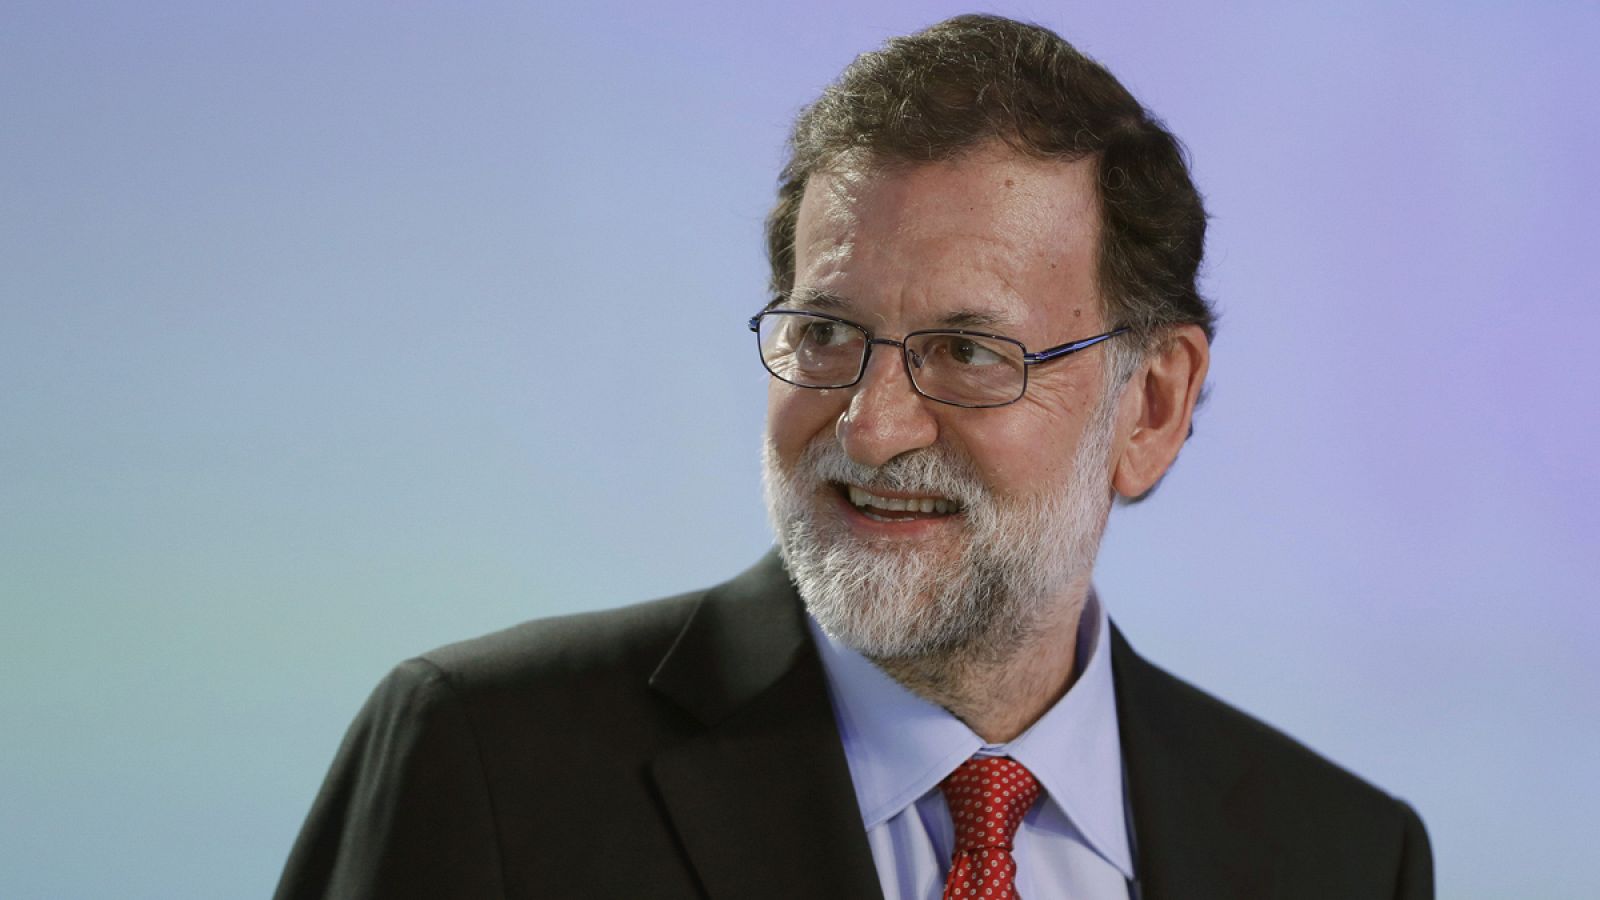 El presidente del Gobierno, Mariano Rajoy, en una imagen de hace unos días